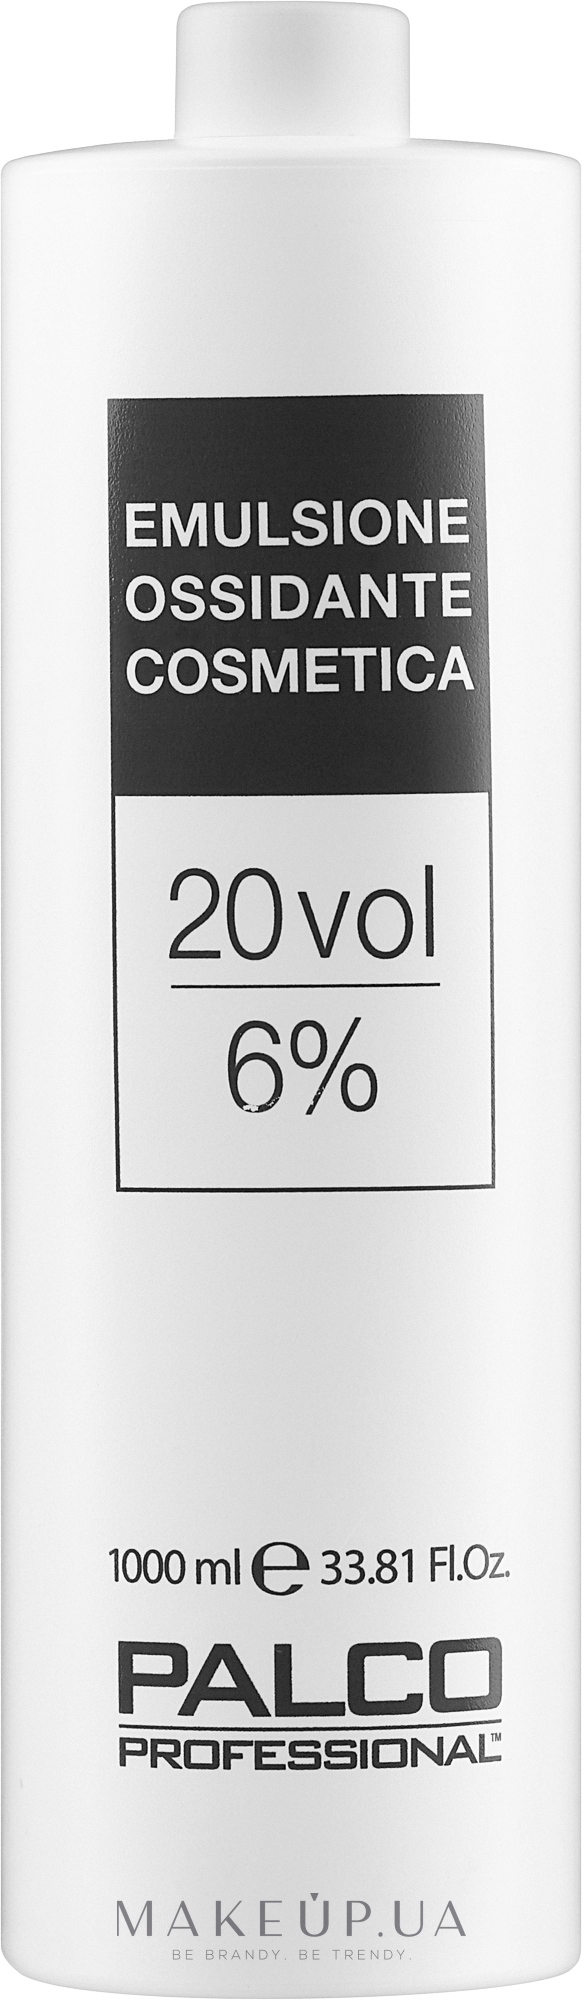 Окислительная эмульсия 20 объемов 6% - Palco Professional Emulsione Ossidante Cosmetica — фото 1000ml